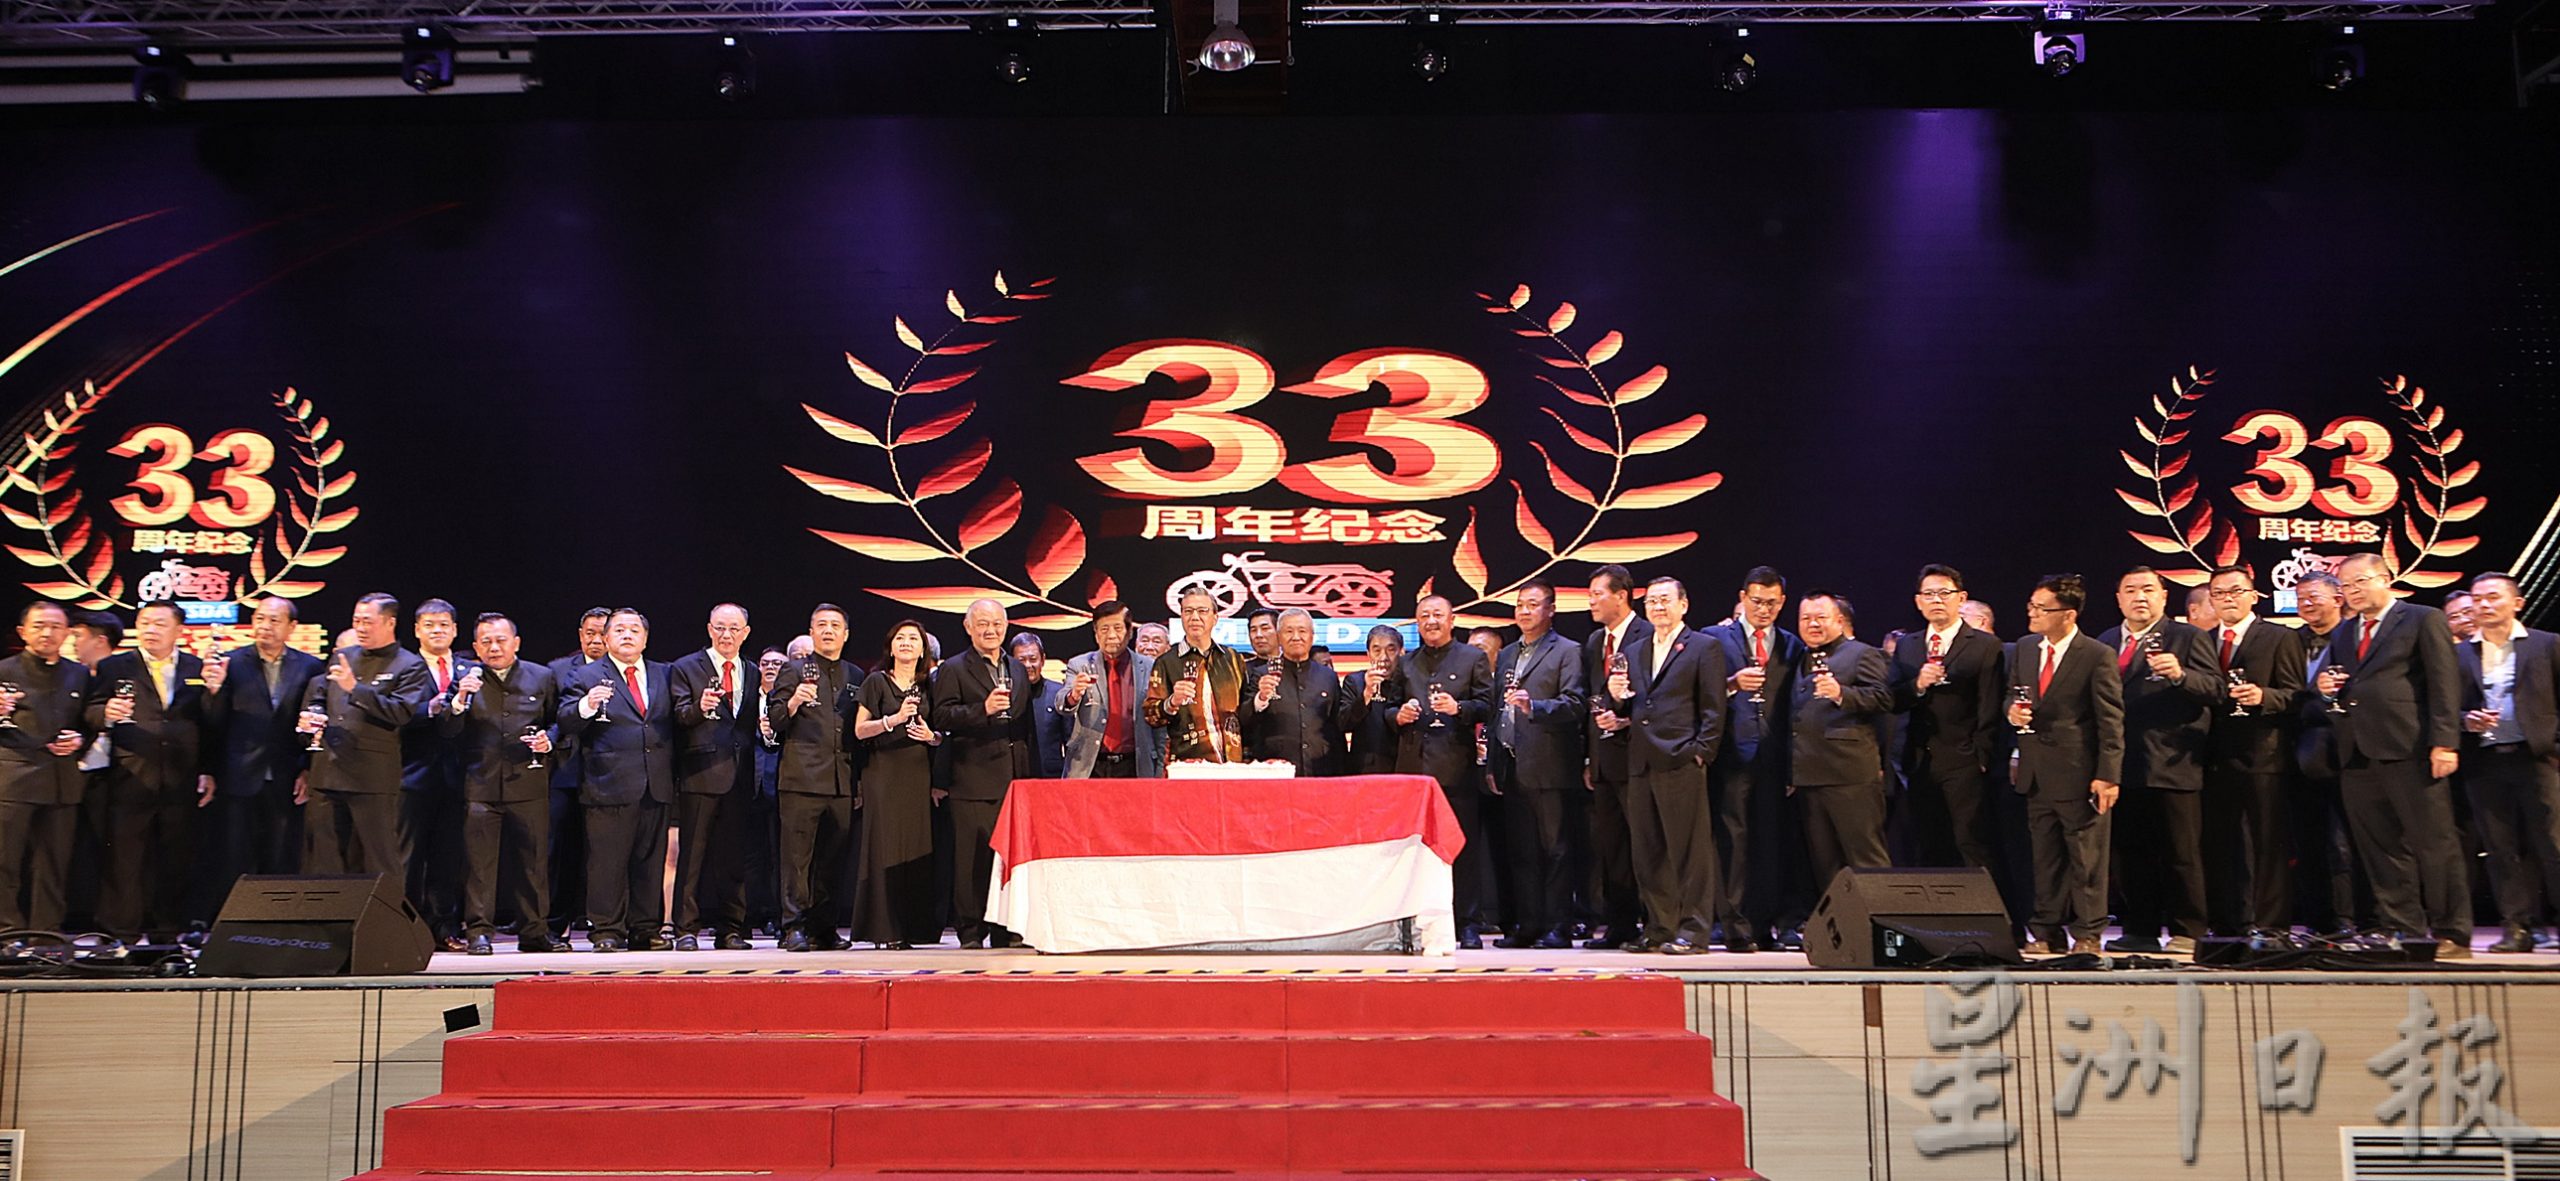 马来西亚摩托车商总会33周年晚宴